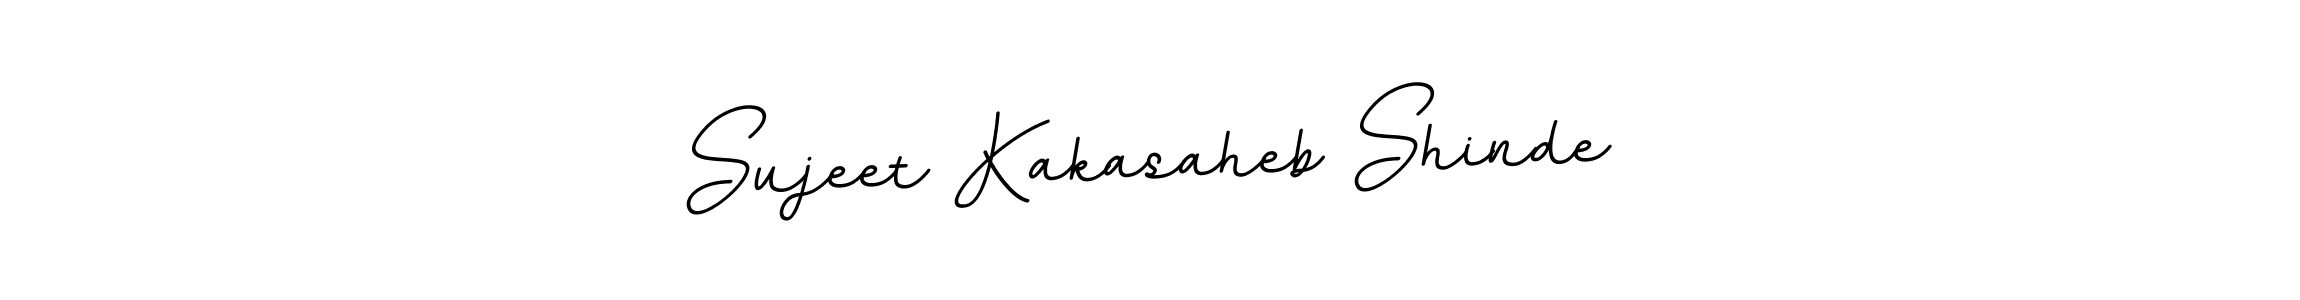 Sujeet Kakasaheb Shinde stylish signature style. Best Handwritten Sign (BallpointsItalic-DORy9) for my name. Handwritten Signature Collection Ideas for my name Sujeet Kakasaheb Shinde. Sujeet Kakasaheb Shinde signature style 11 images and pictures png